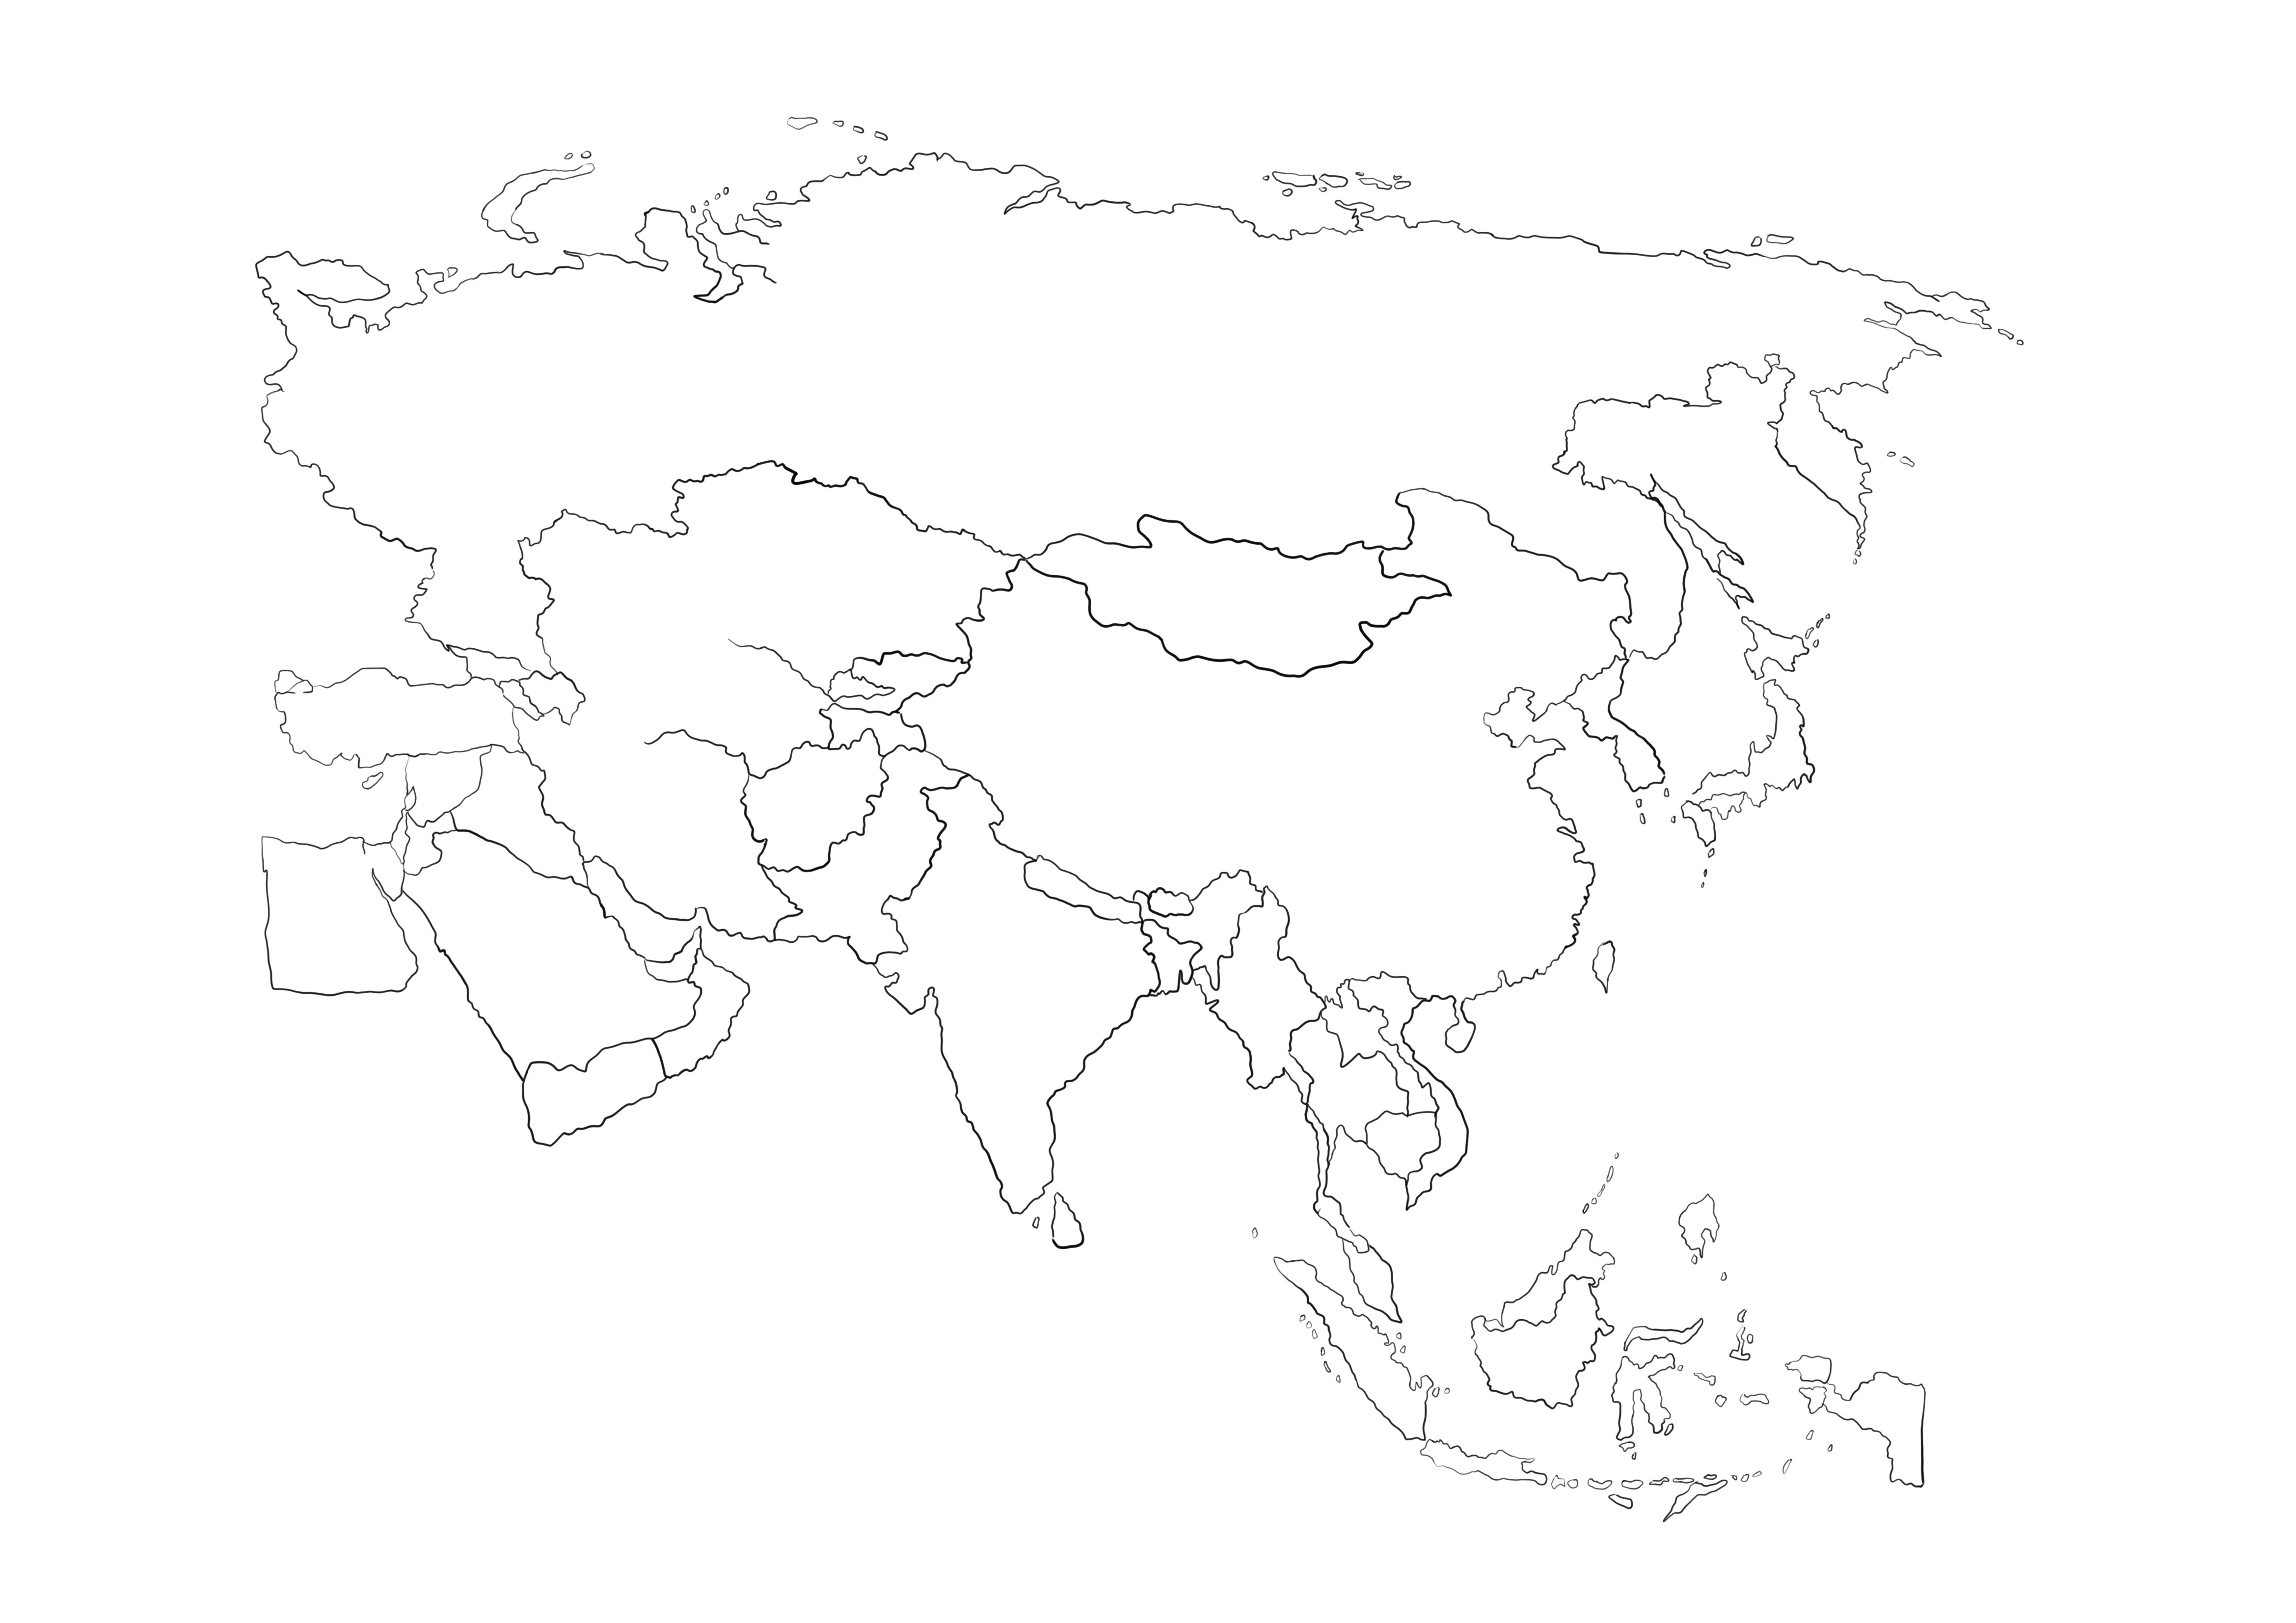 Peta Asia gambar yang dapat dicetak gratis untuk diwarnai oleh anak-anak